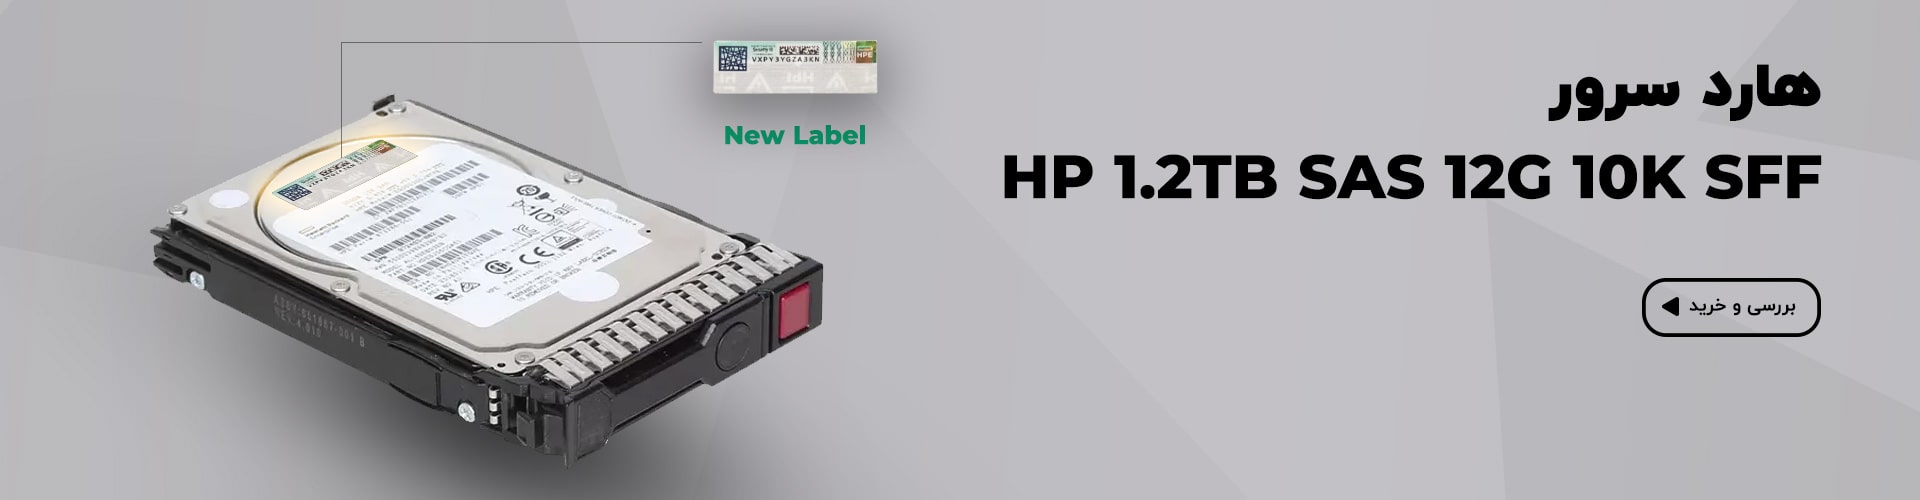 هارد سرور HP 1.2TB SAS 12G 10K SFF
